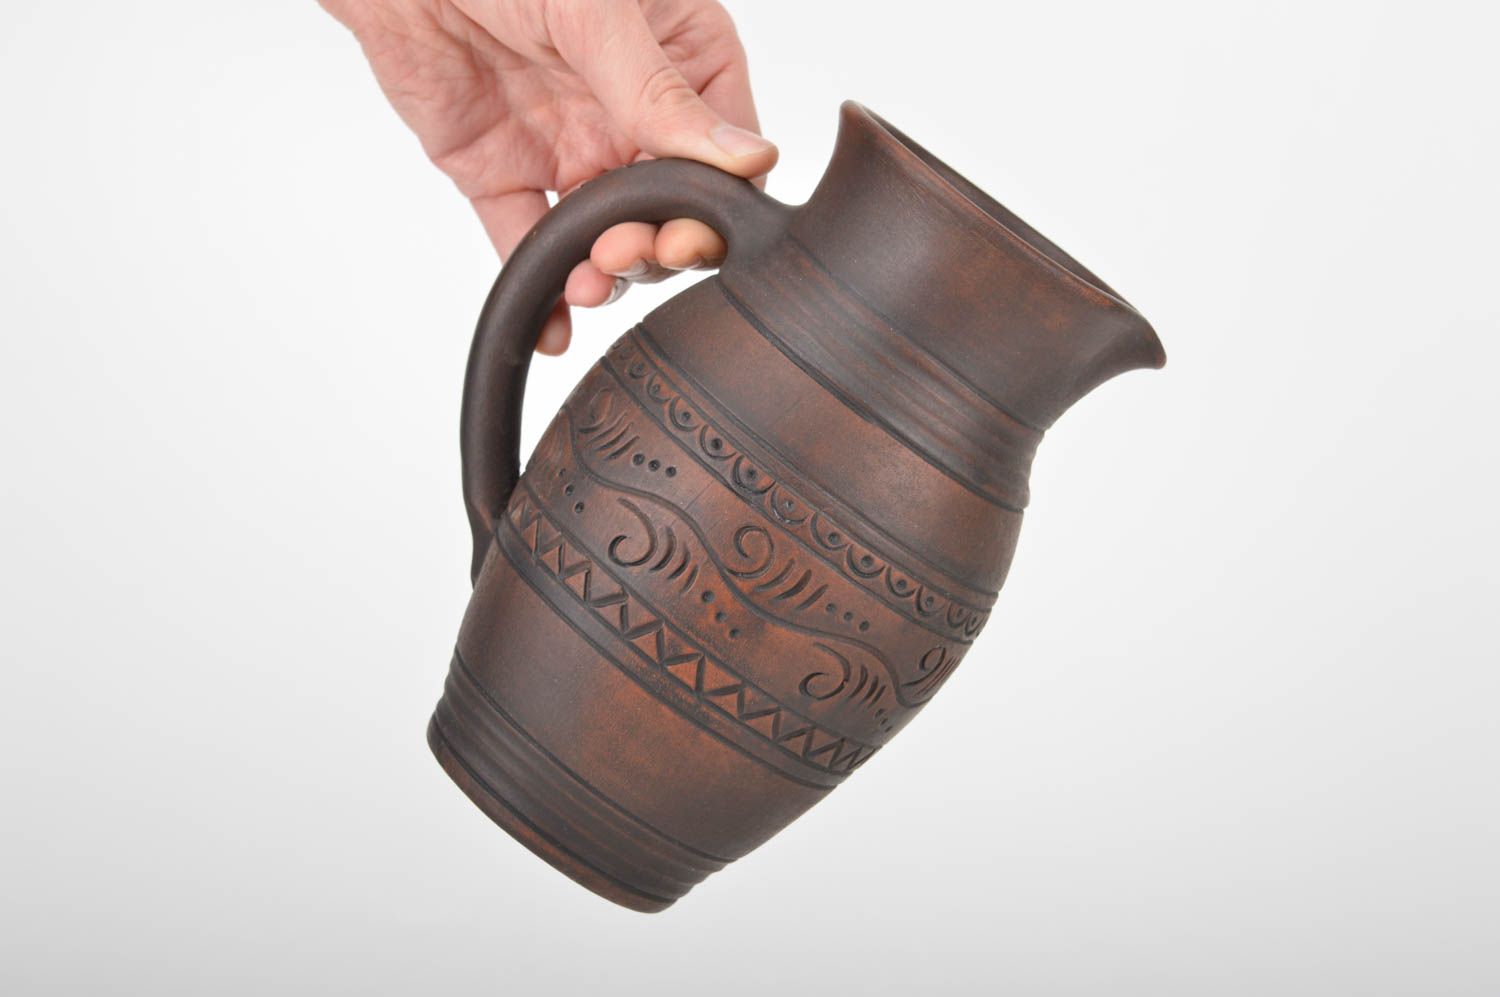 Belle cruche céramique grande faite main 1.7 litre marron écologique ornementée photo 3